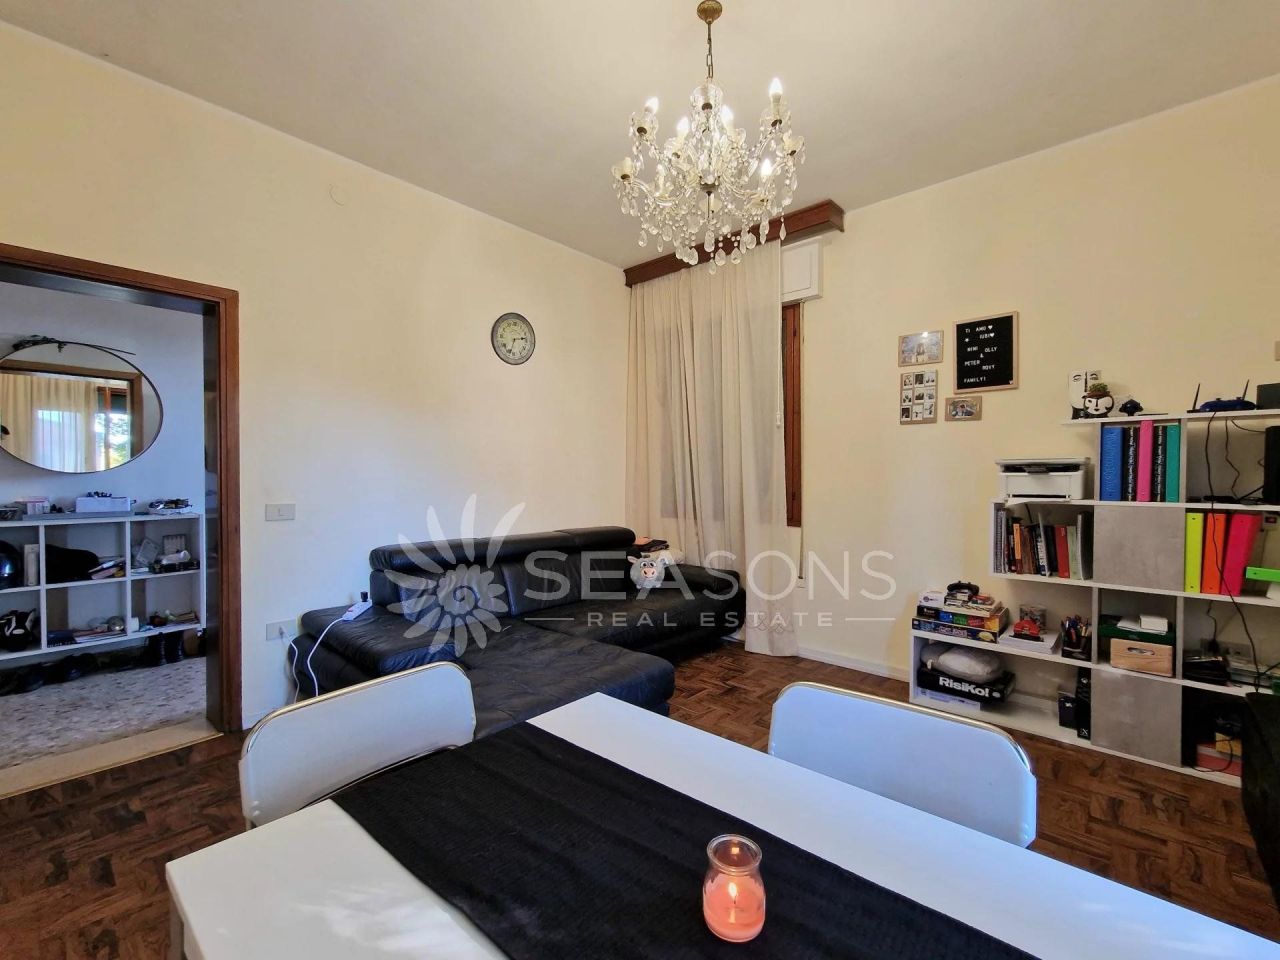 Wohnung in Musile di Piave, Italien, 110 m2 - Foto 1